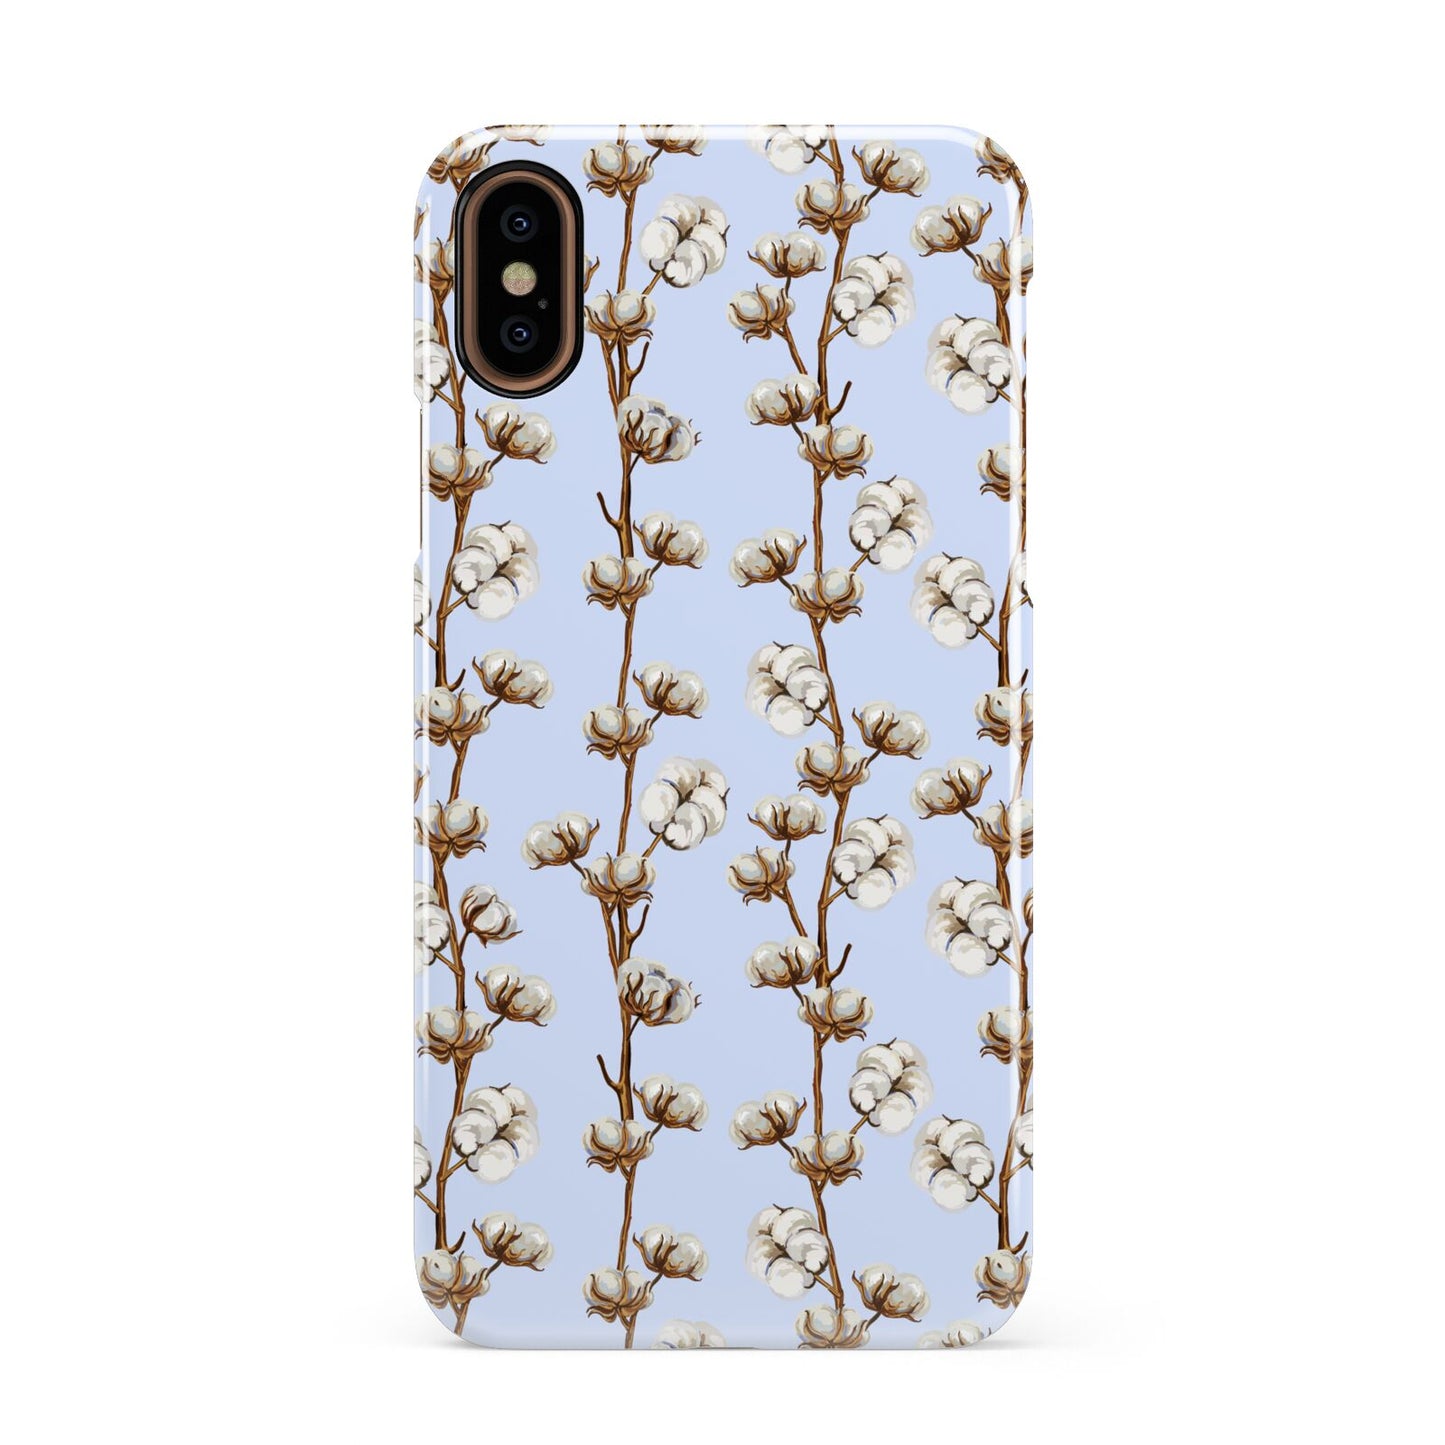 Cotton Branch Apple iPhone XS 3D Snap Case